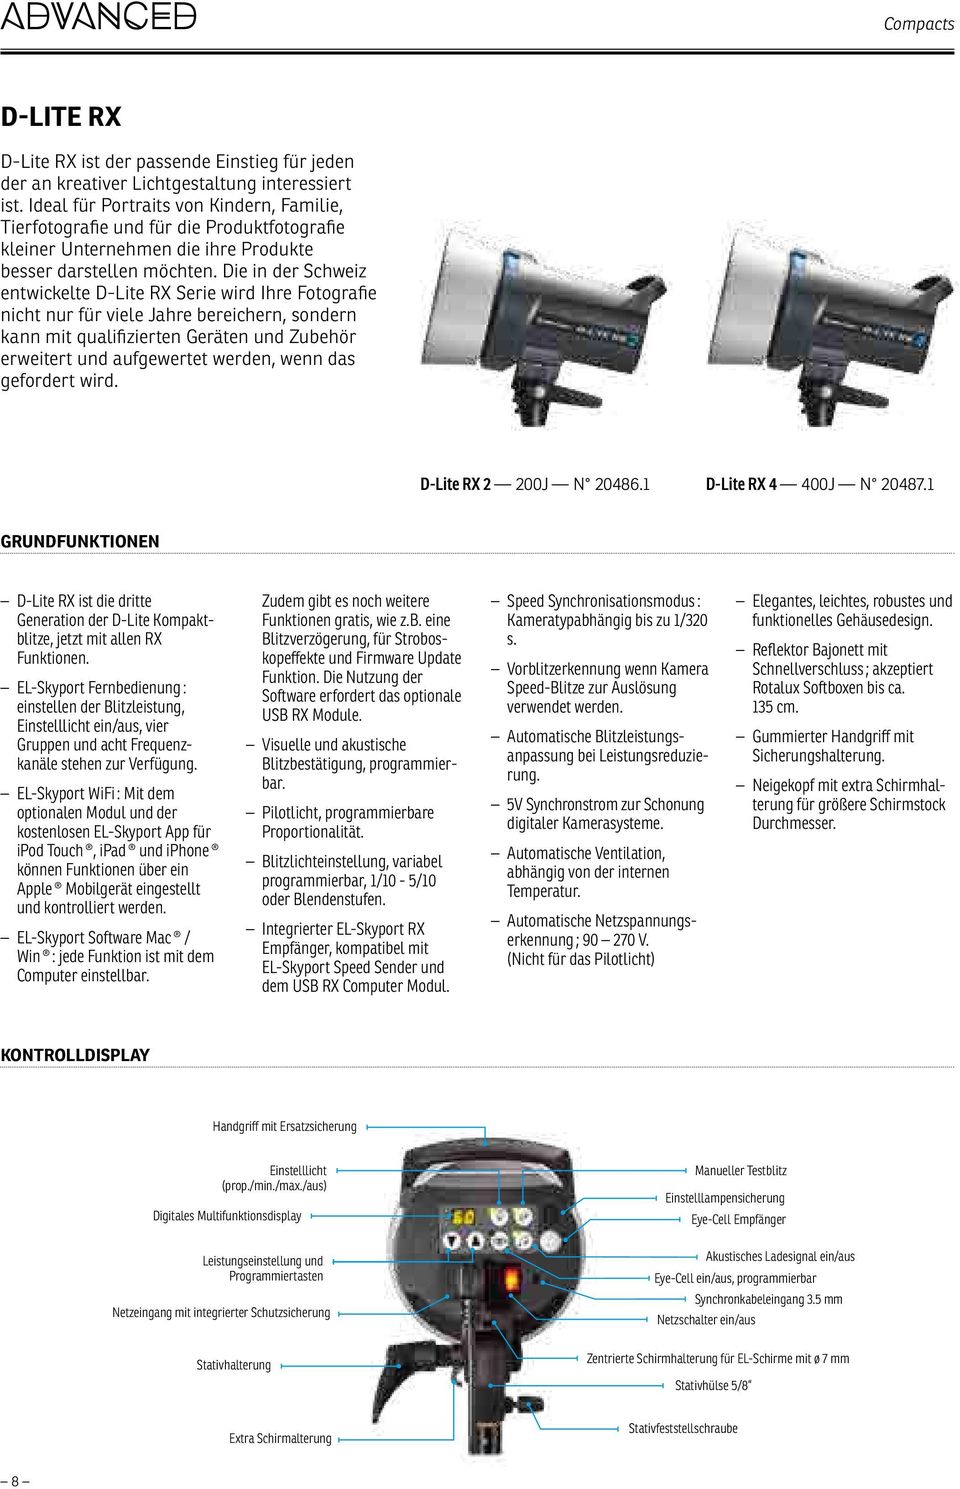 Die in der Schweiz entwickelte D-Lite RX Serie wird Ihre Fotografie nicht nur für viele Jahre bereichern, sondern kann mit qualifizierten Geräten und Zubehör erweitert und aufgewertet werden, wenn